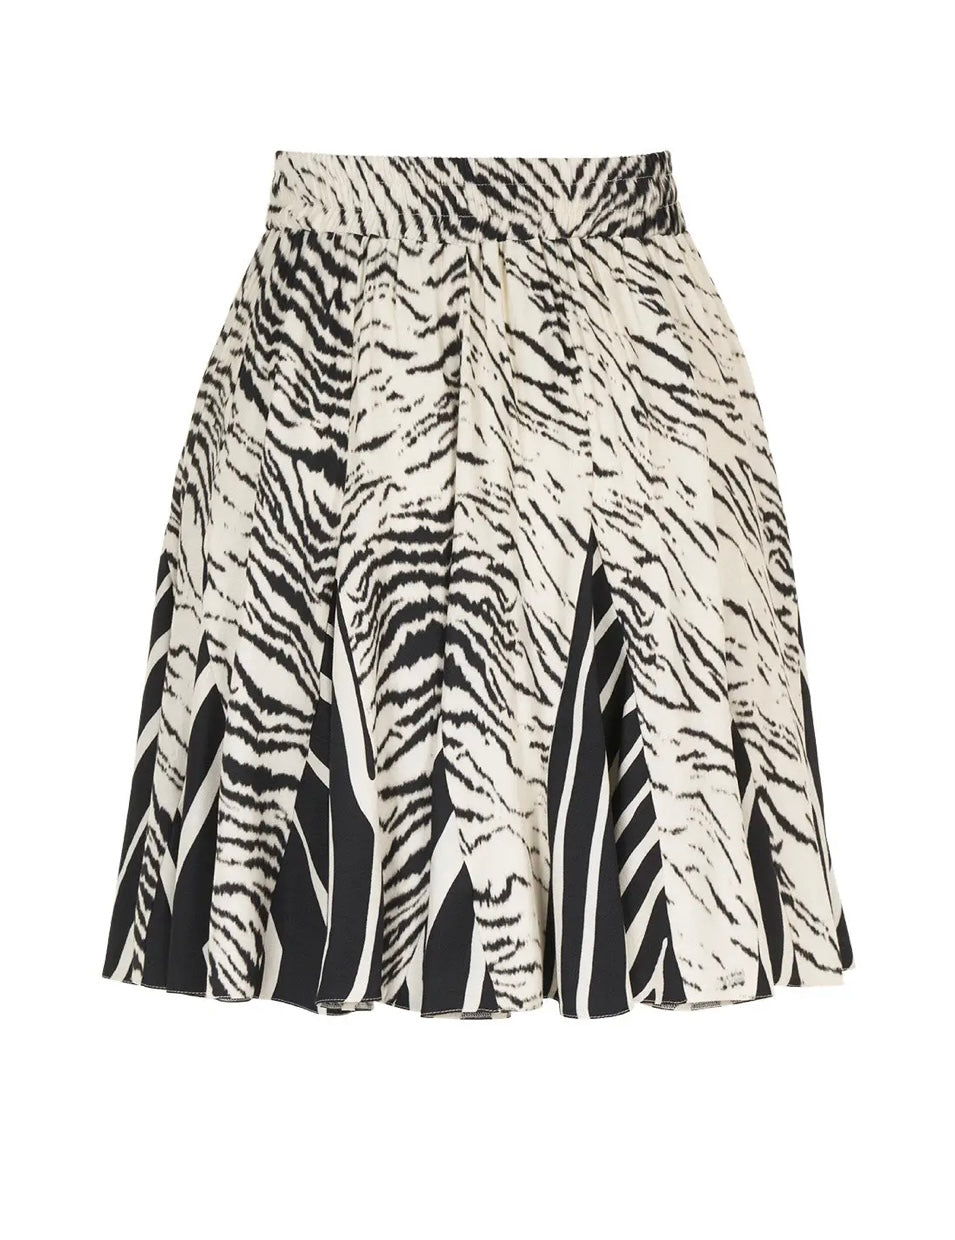 Zuri Zebra Print Mini Skirt